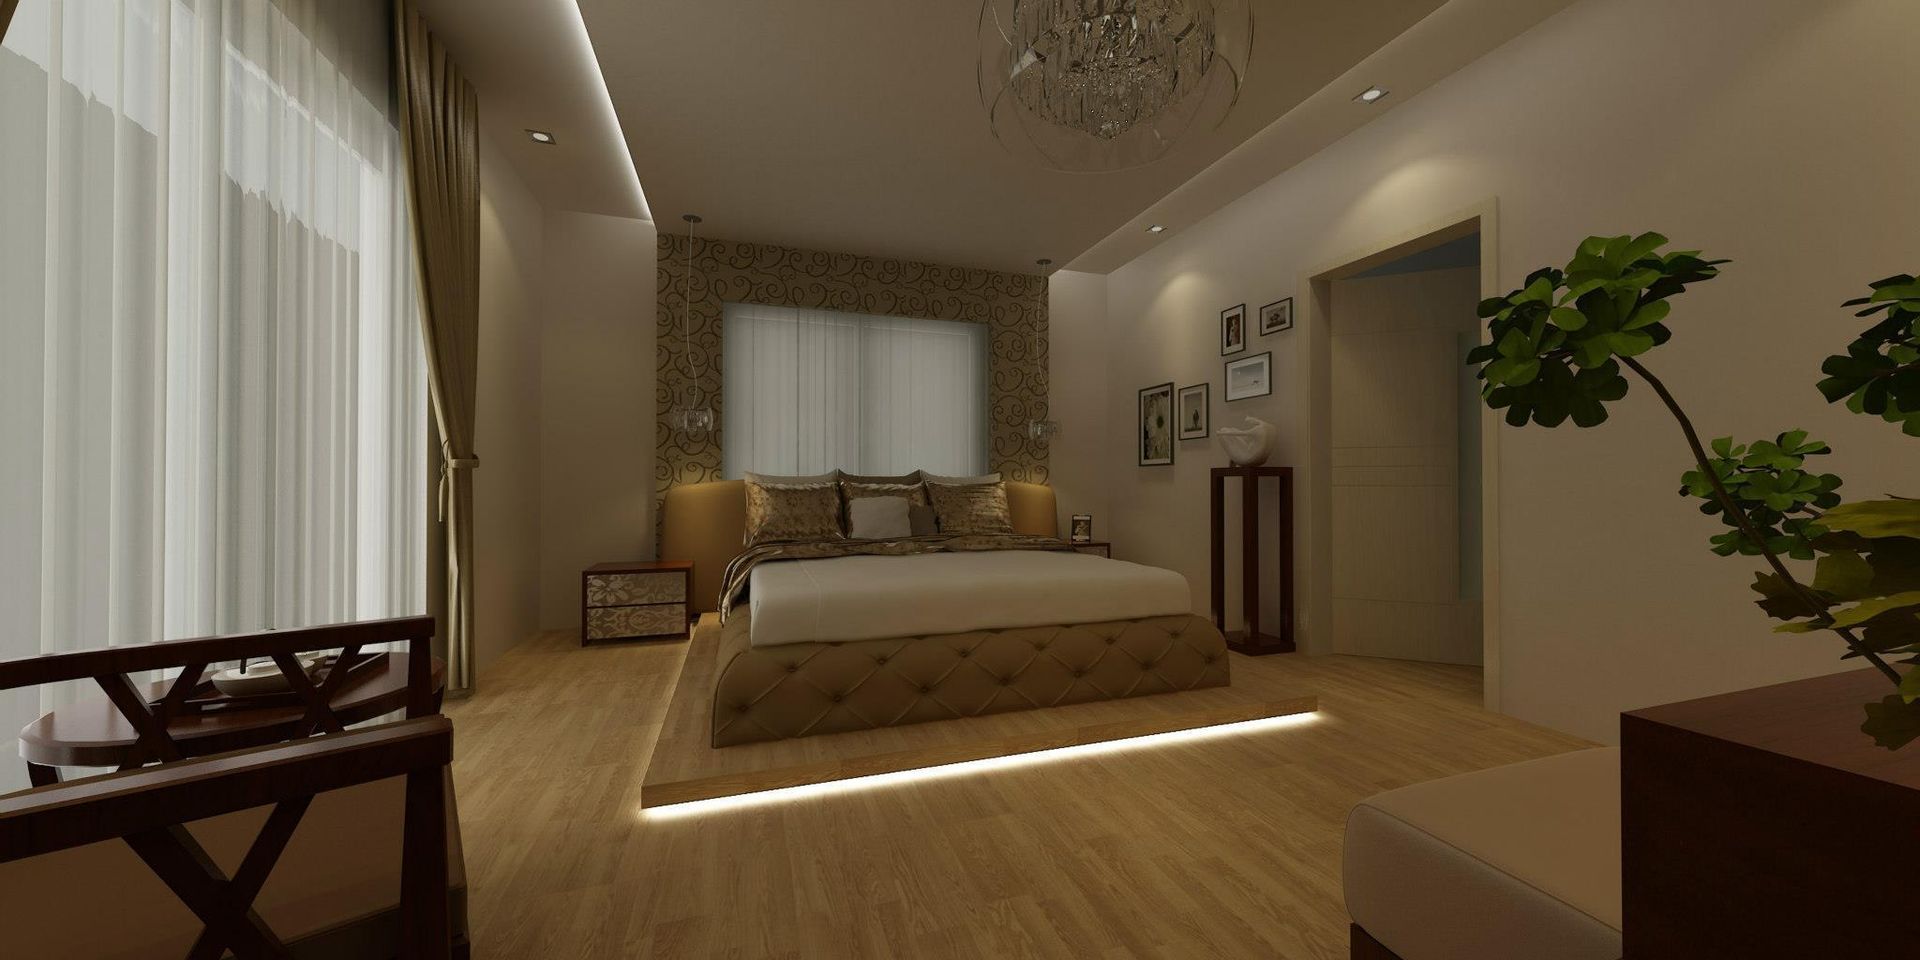 VİLLA N'MODA (DENİZLİ), CANSEL BOZKURT interior architect CANSEL BOZKURT interior architect Minimalist bedroom